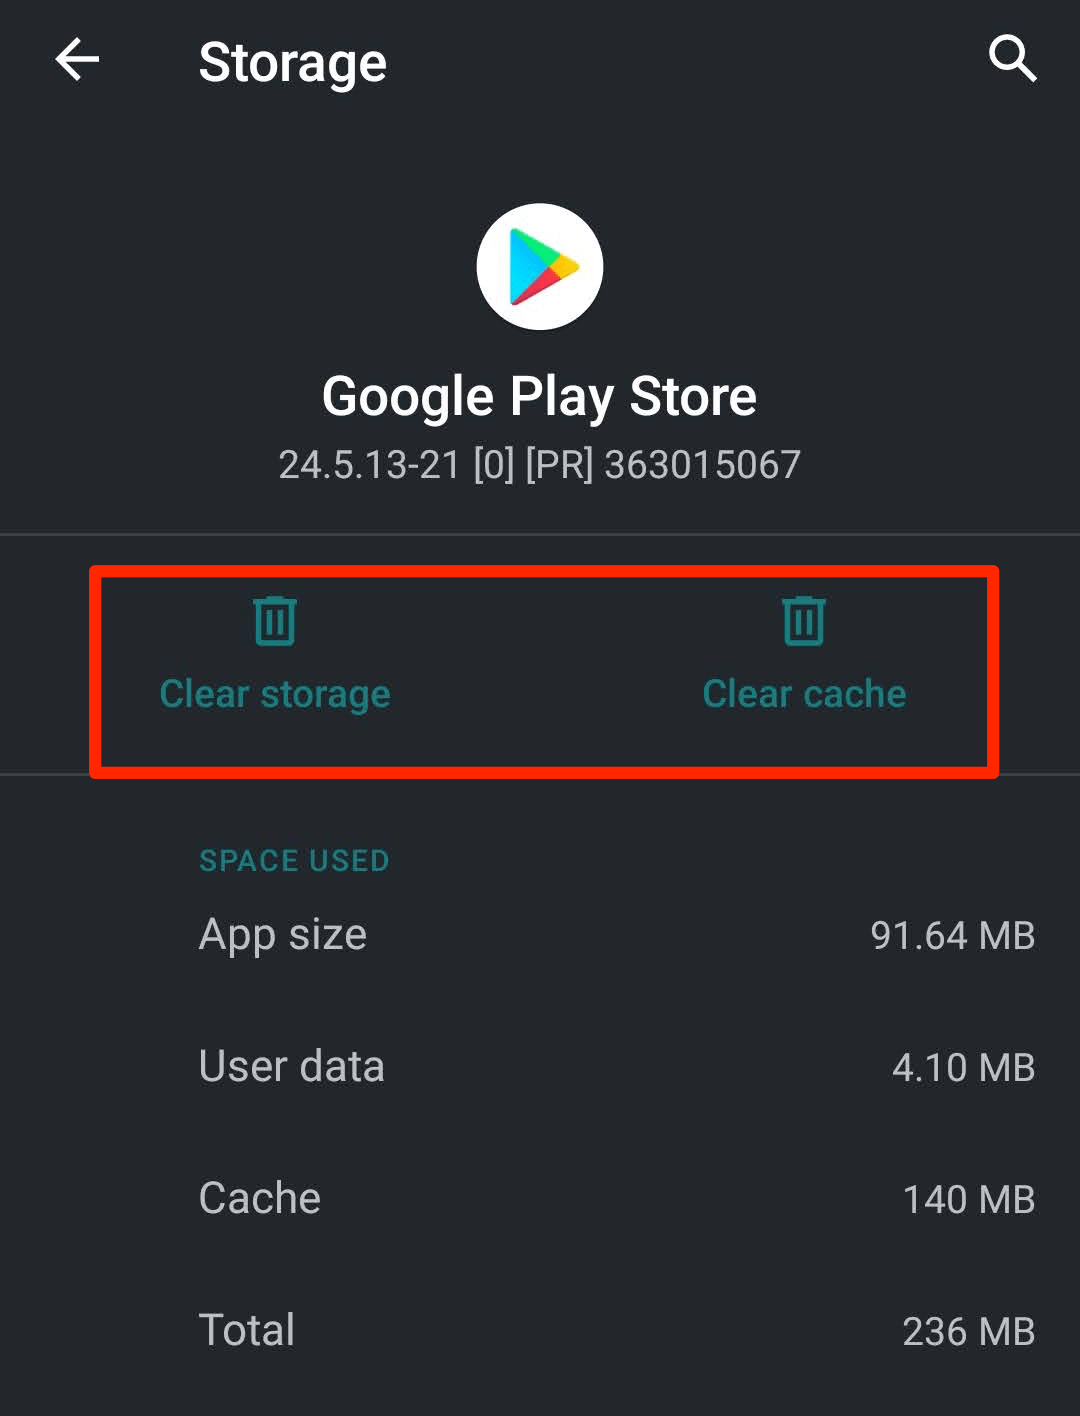 Botón Borrar caché y Borrar almacenamiento de Google Play Store